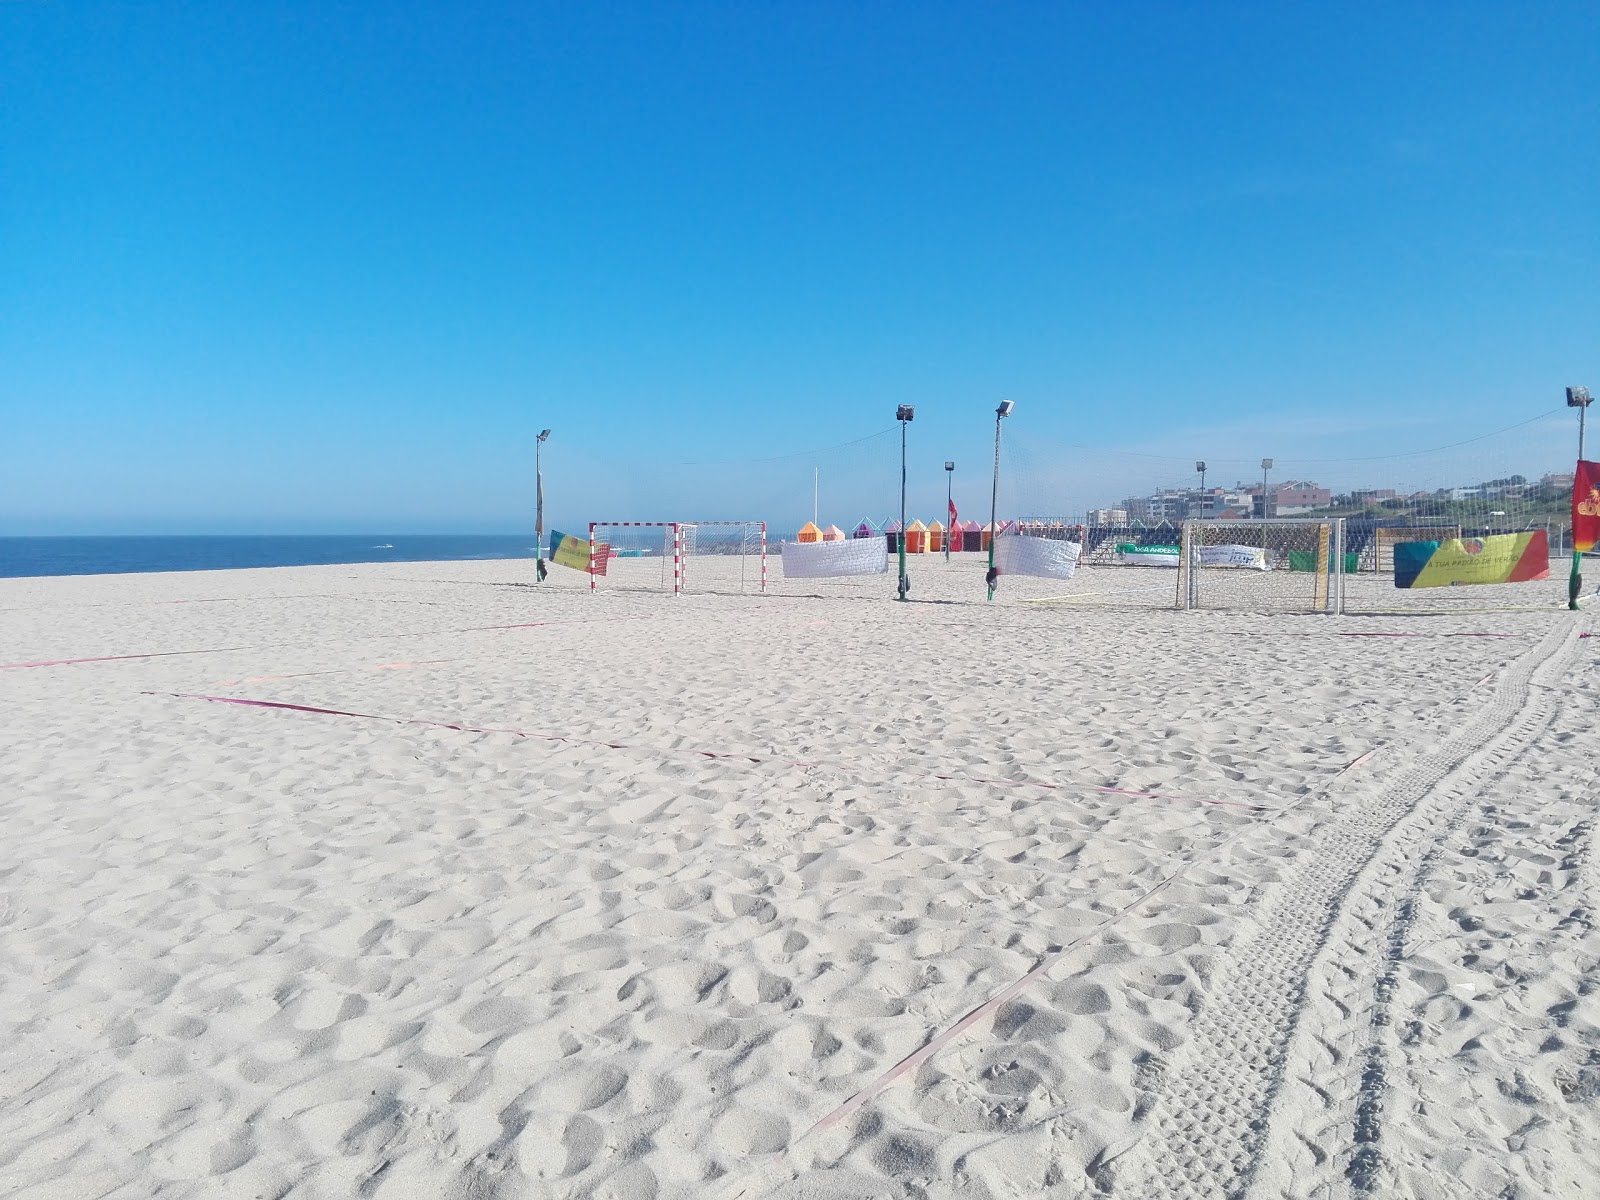 Praia da Sereia'in fotoğrafı ve yerleşim